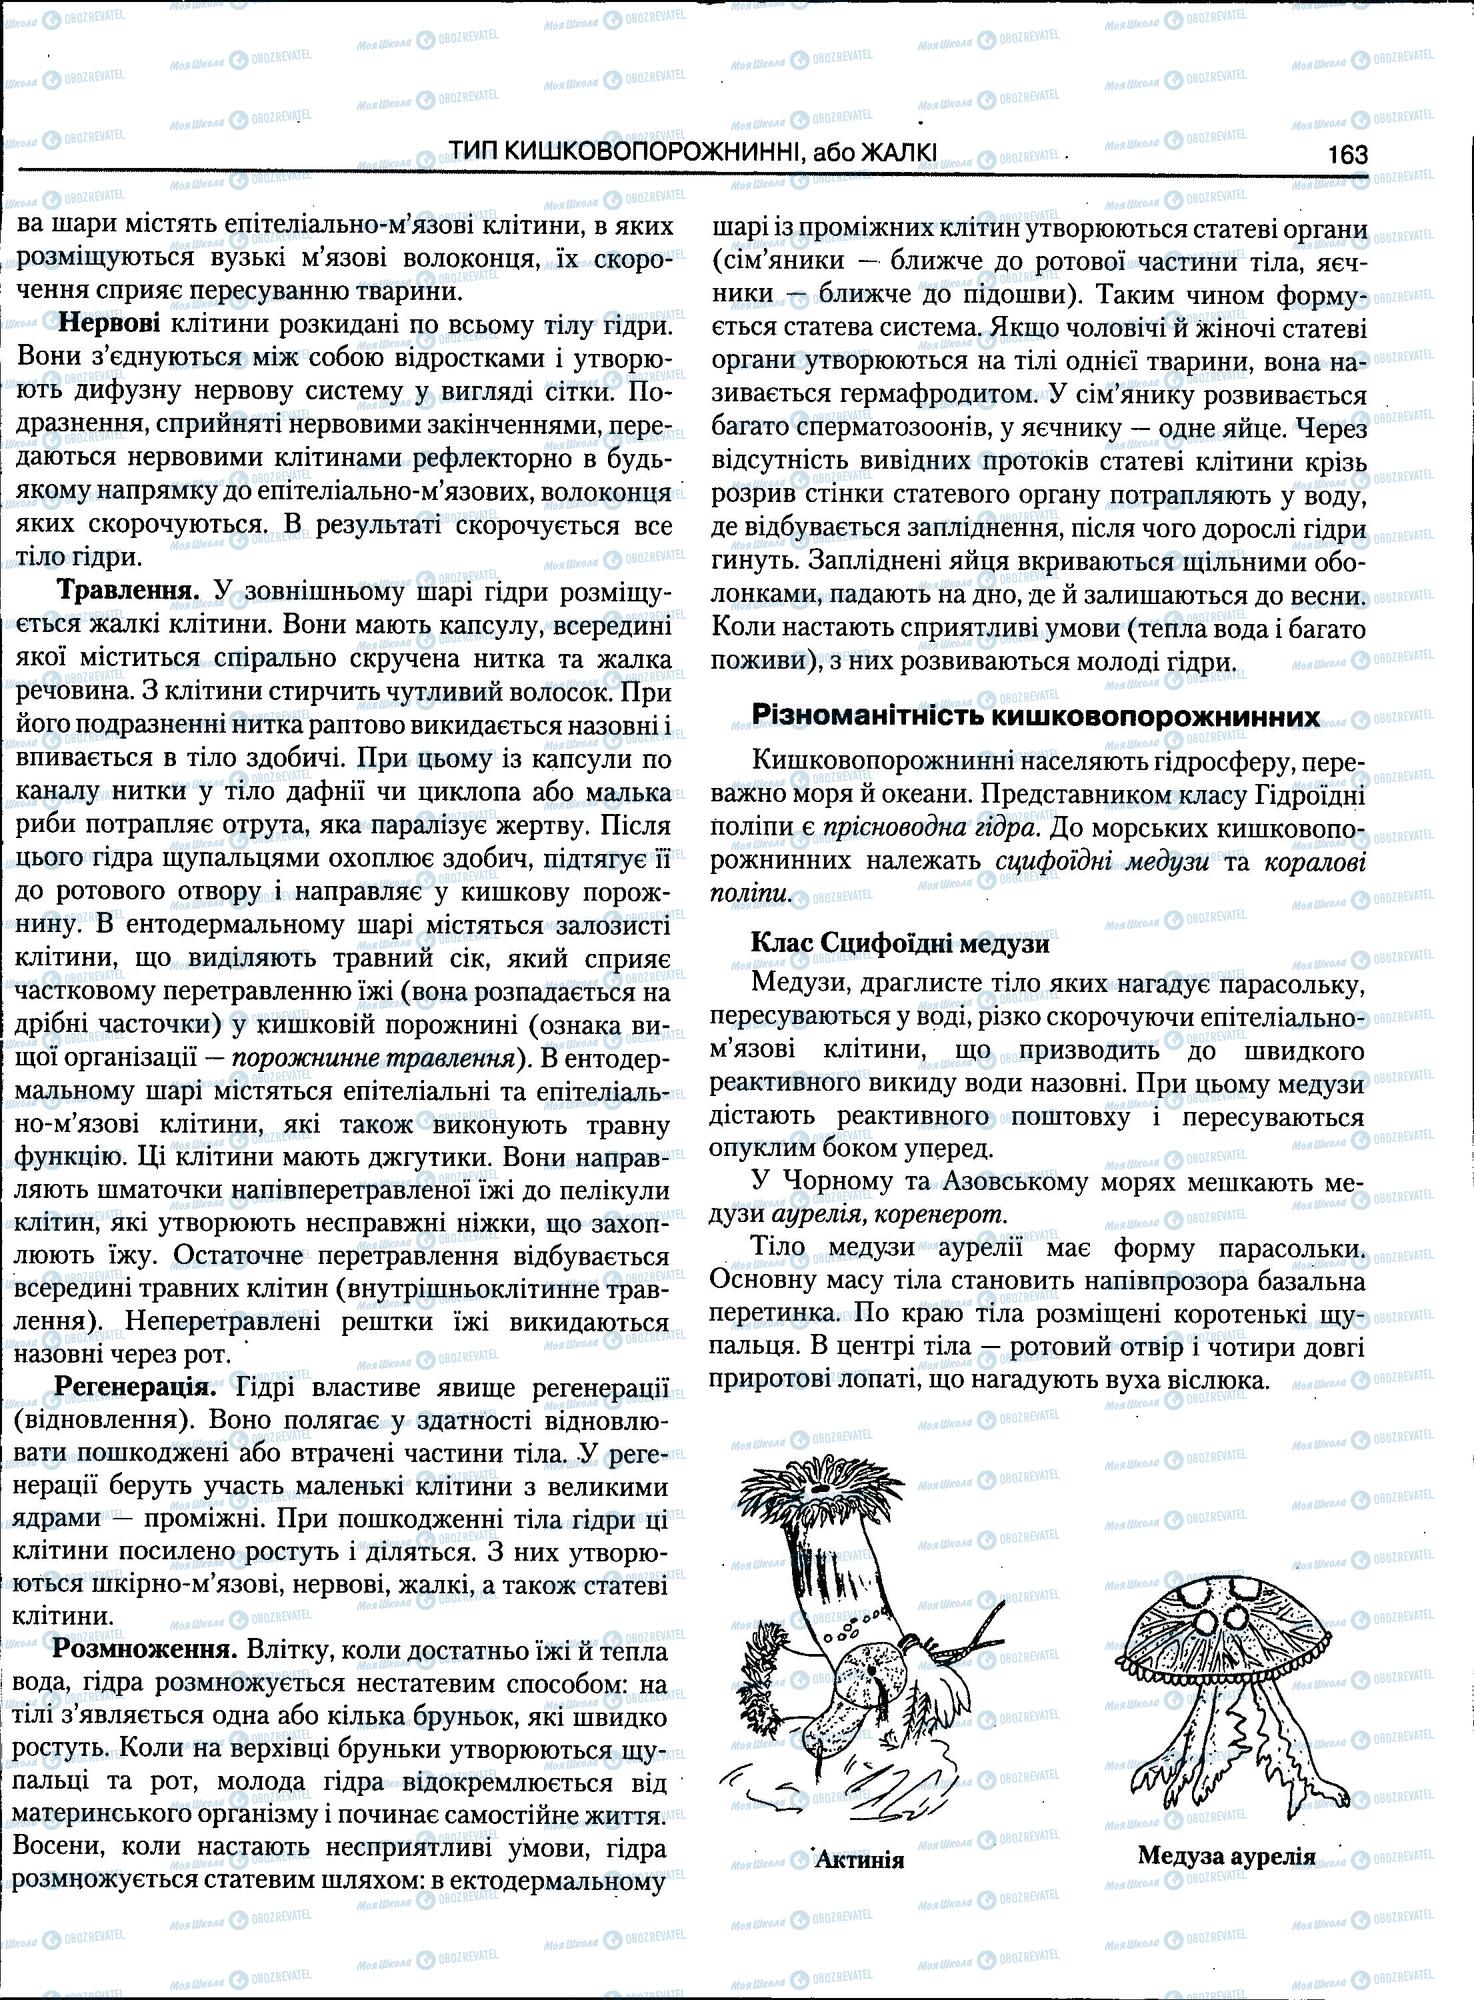 ЗНО Биология 11 класс страница 163